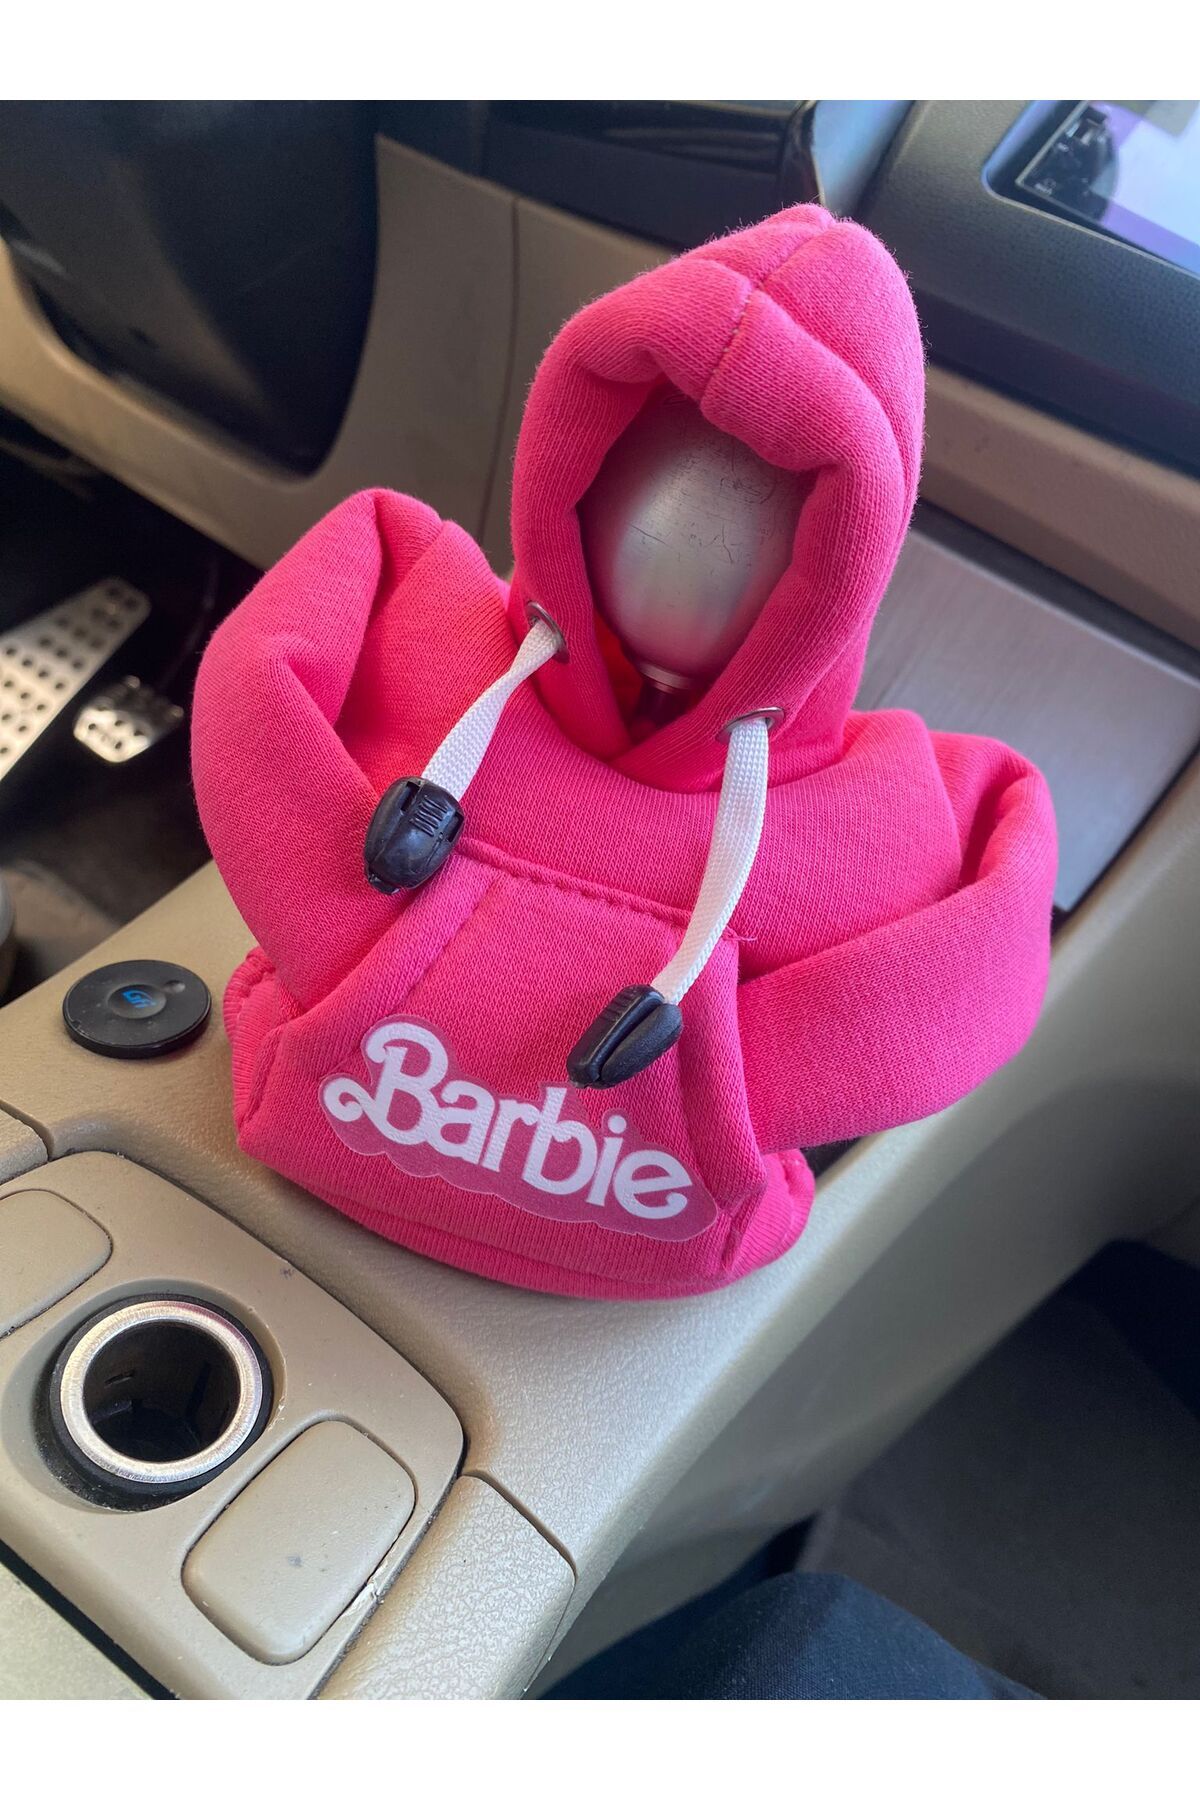 Barbie Araba vites kılıfı